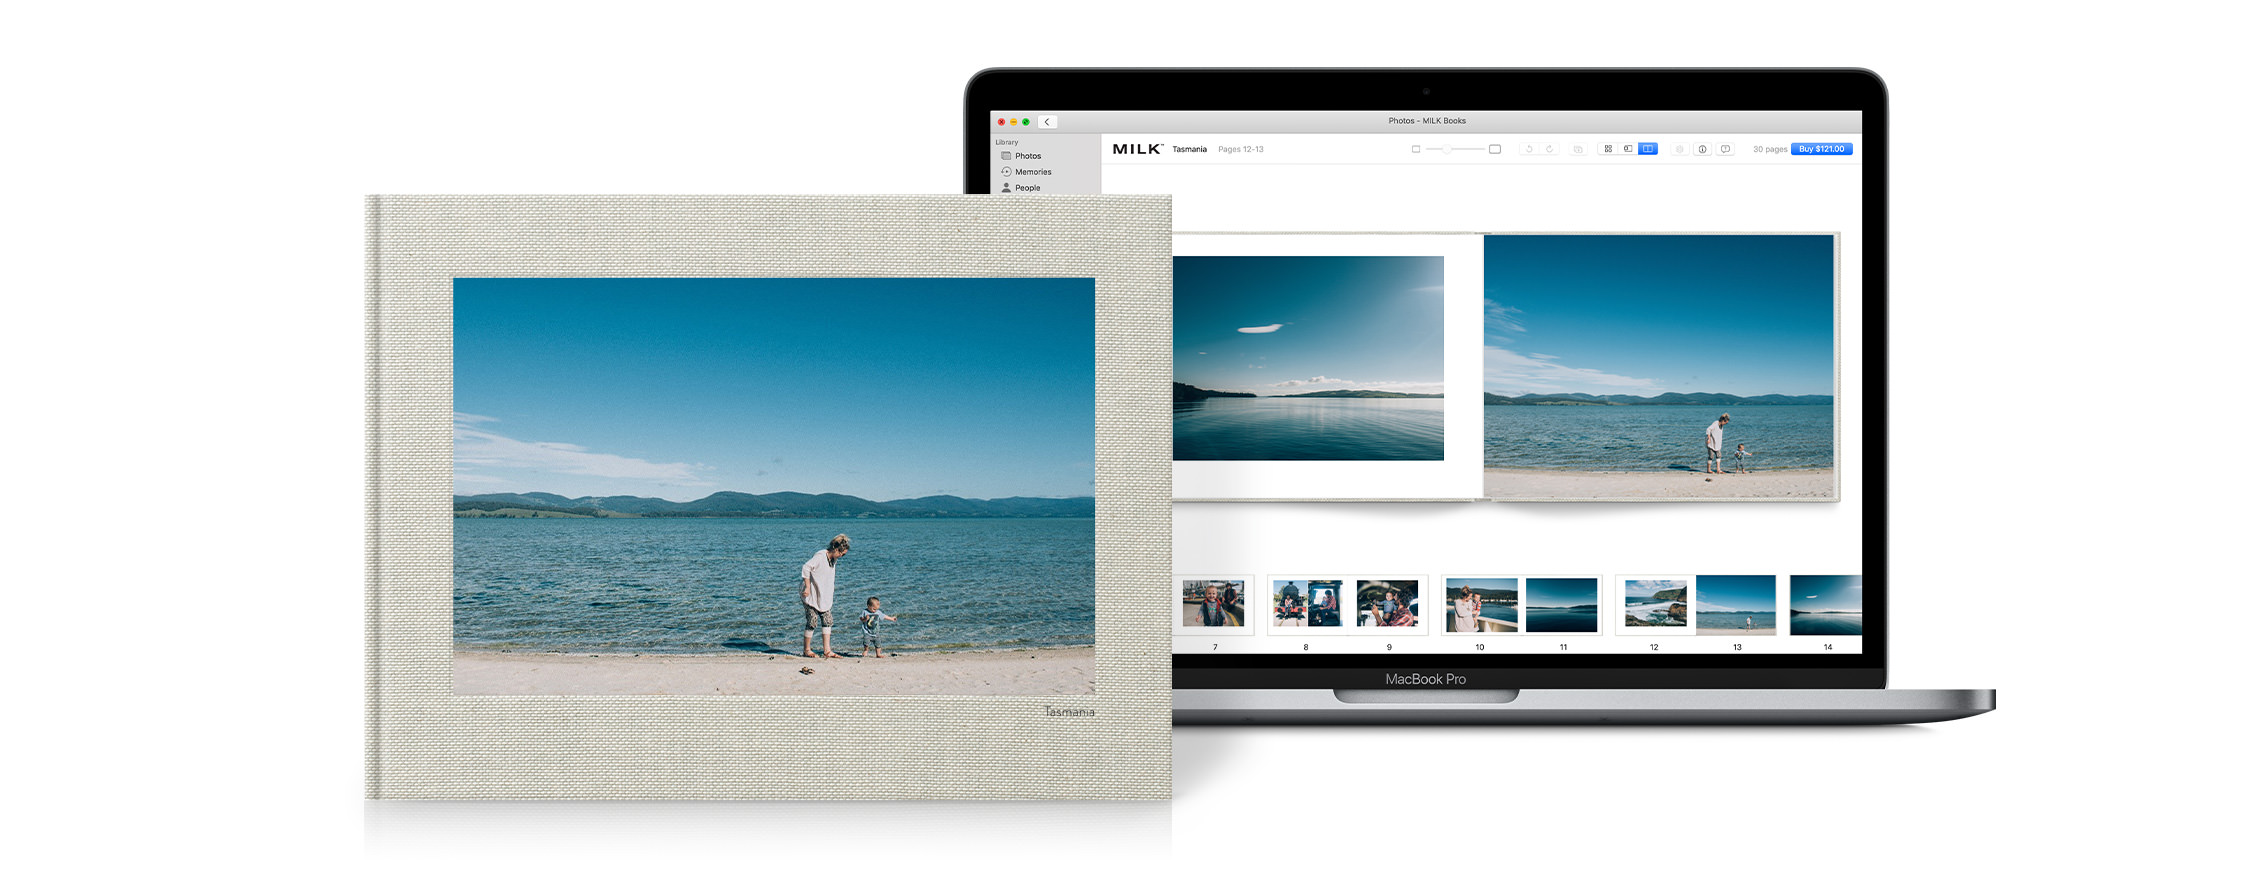 Macbook geöffnet, um die Projekterweiterung für Apple Photos zu zeigen. Fotobuch mit fertigem Produkt